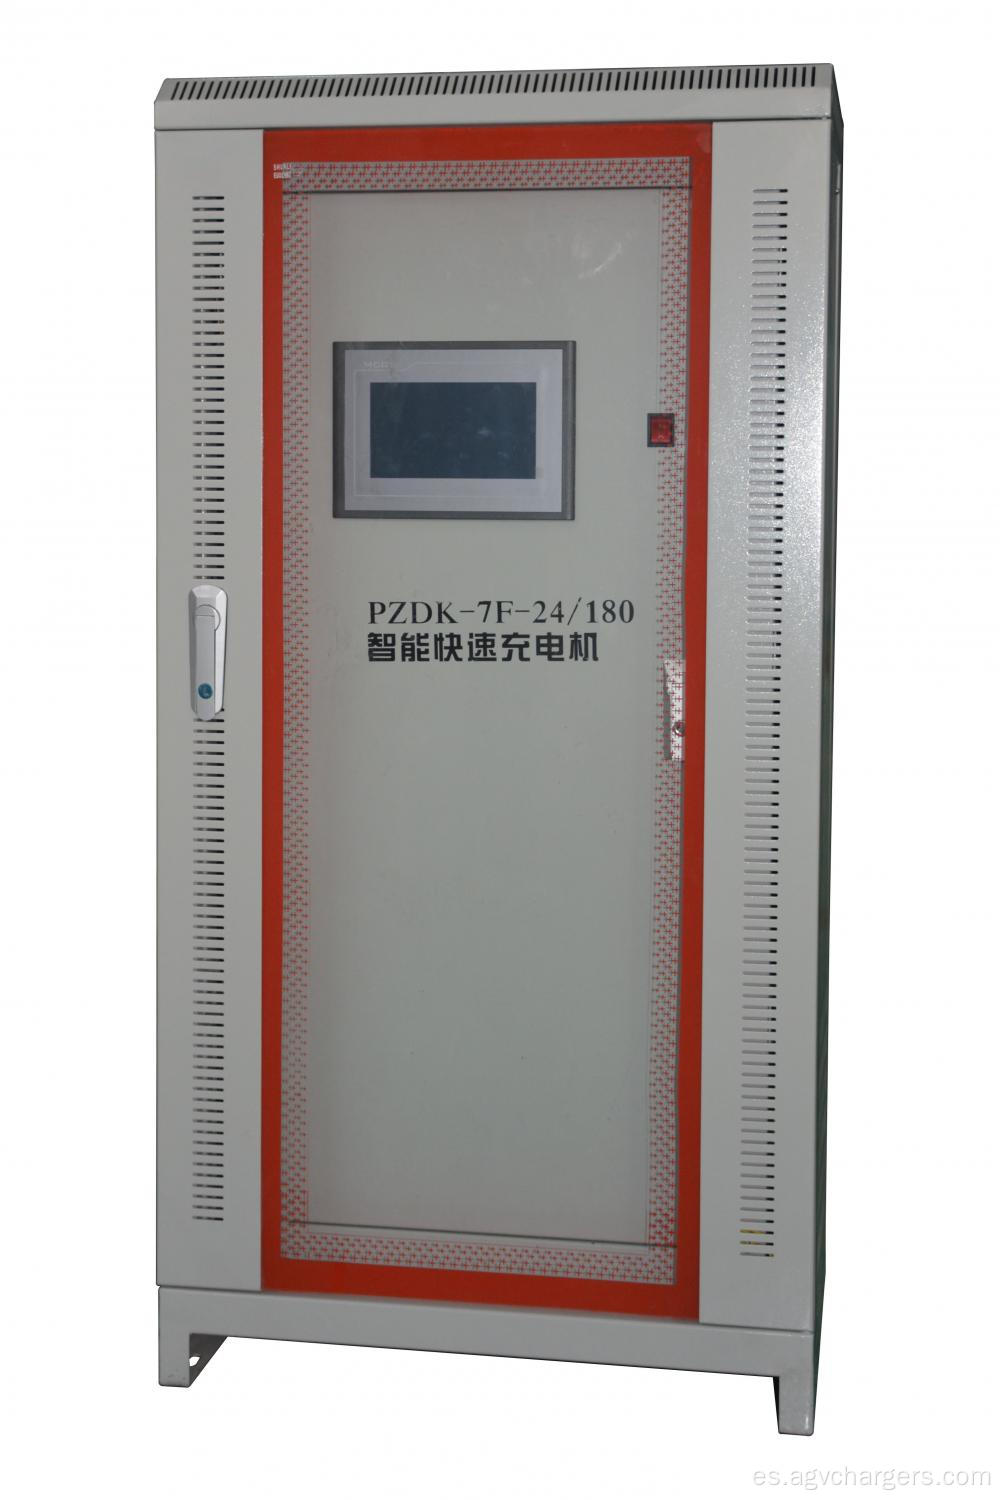 Cargador de batería de 24V / 36V / 48V VRLA para la carretilla elevadora eléctrica